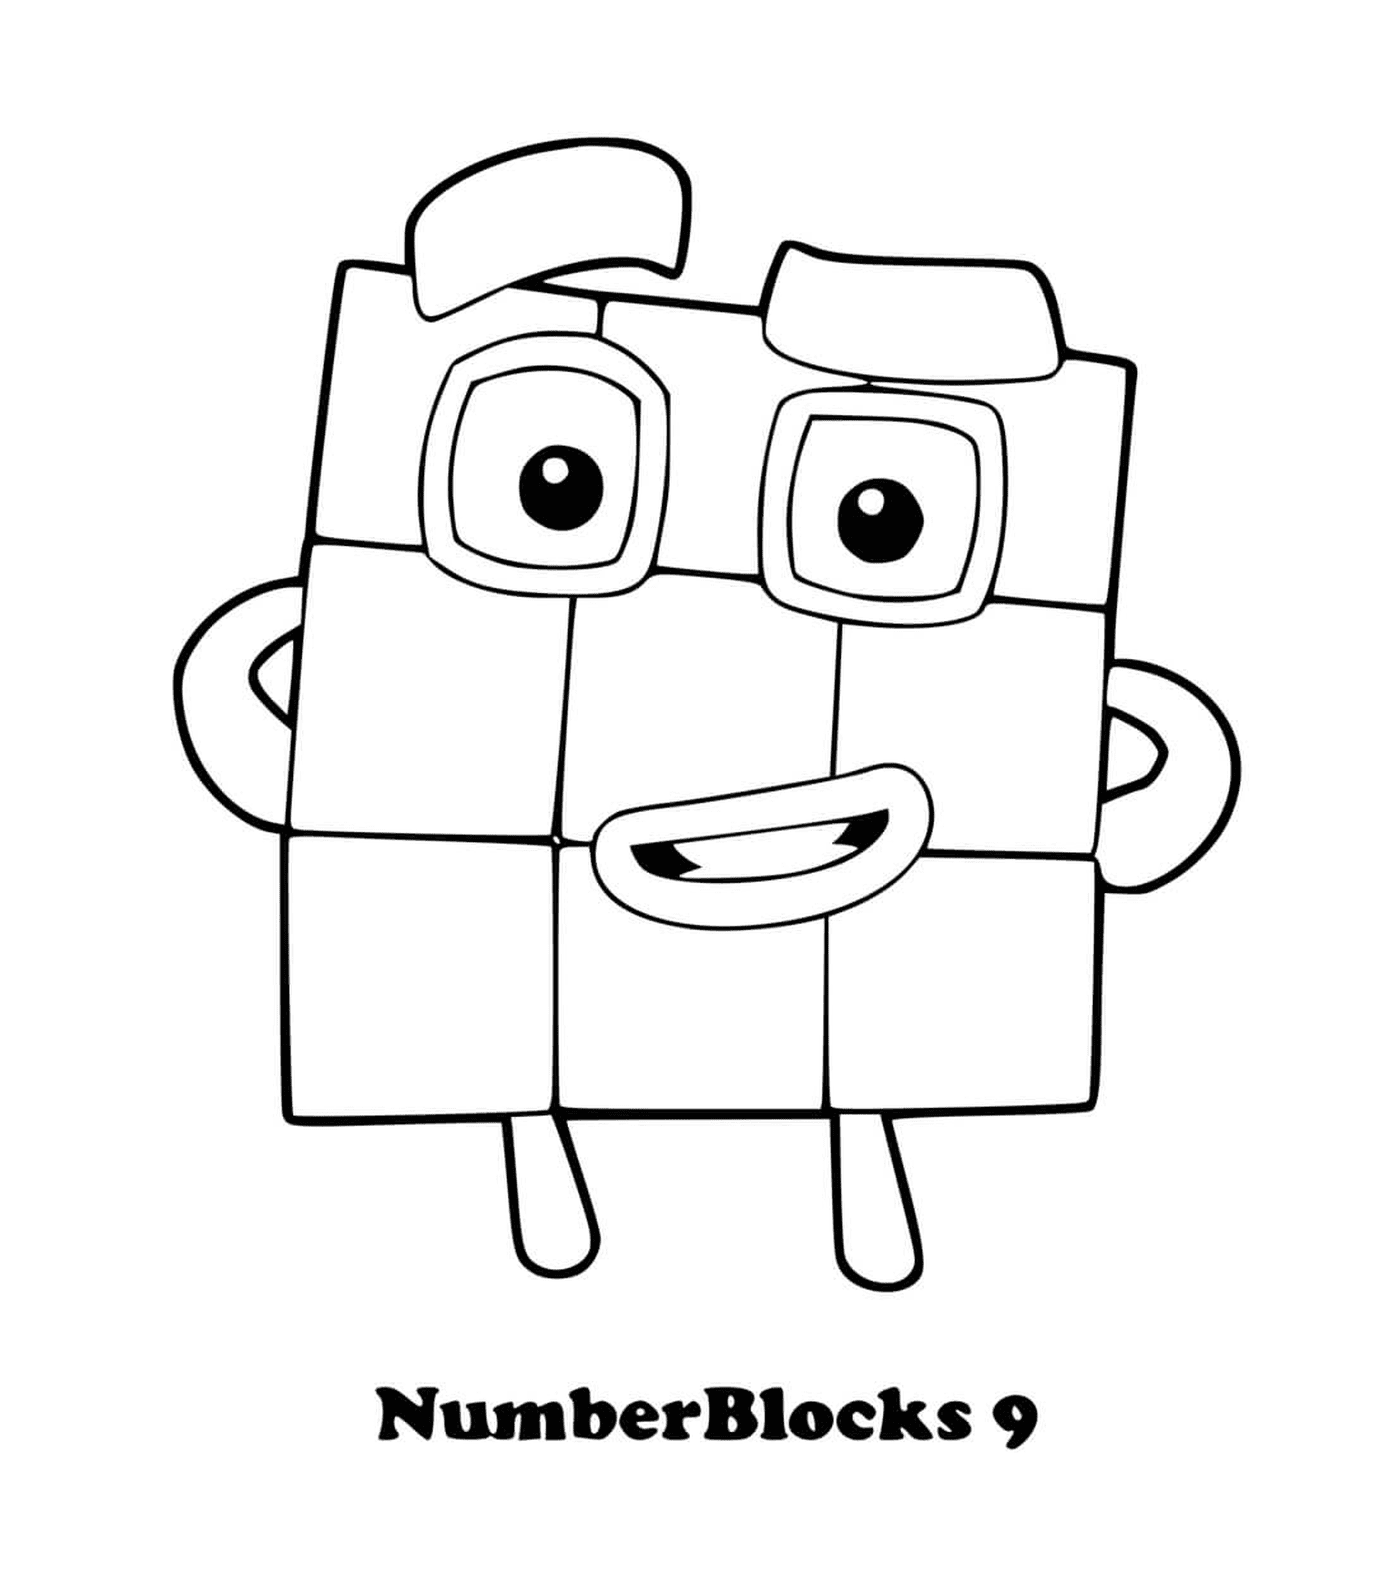  Номерные блоки номер 9, квадрат с глазами 